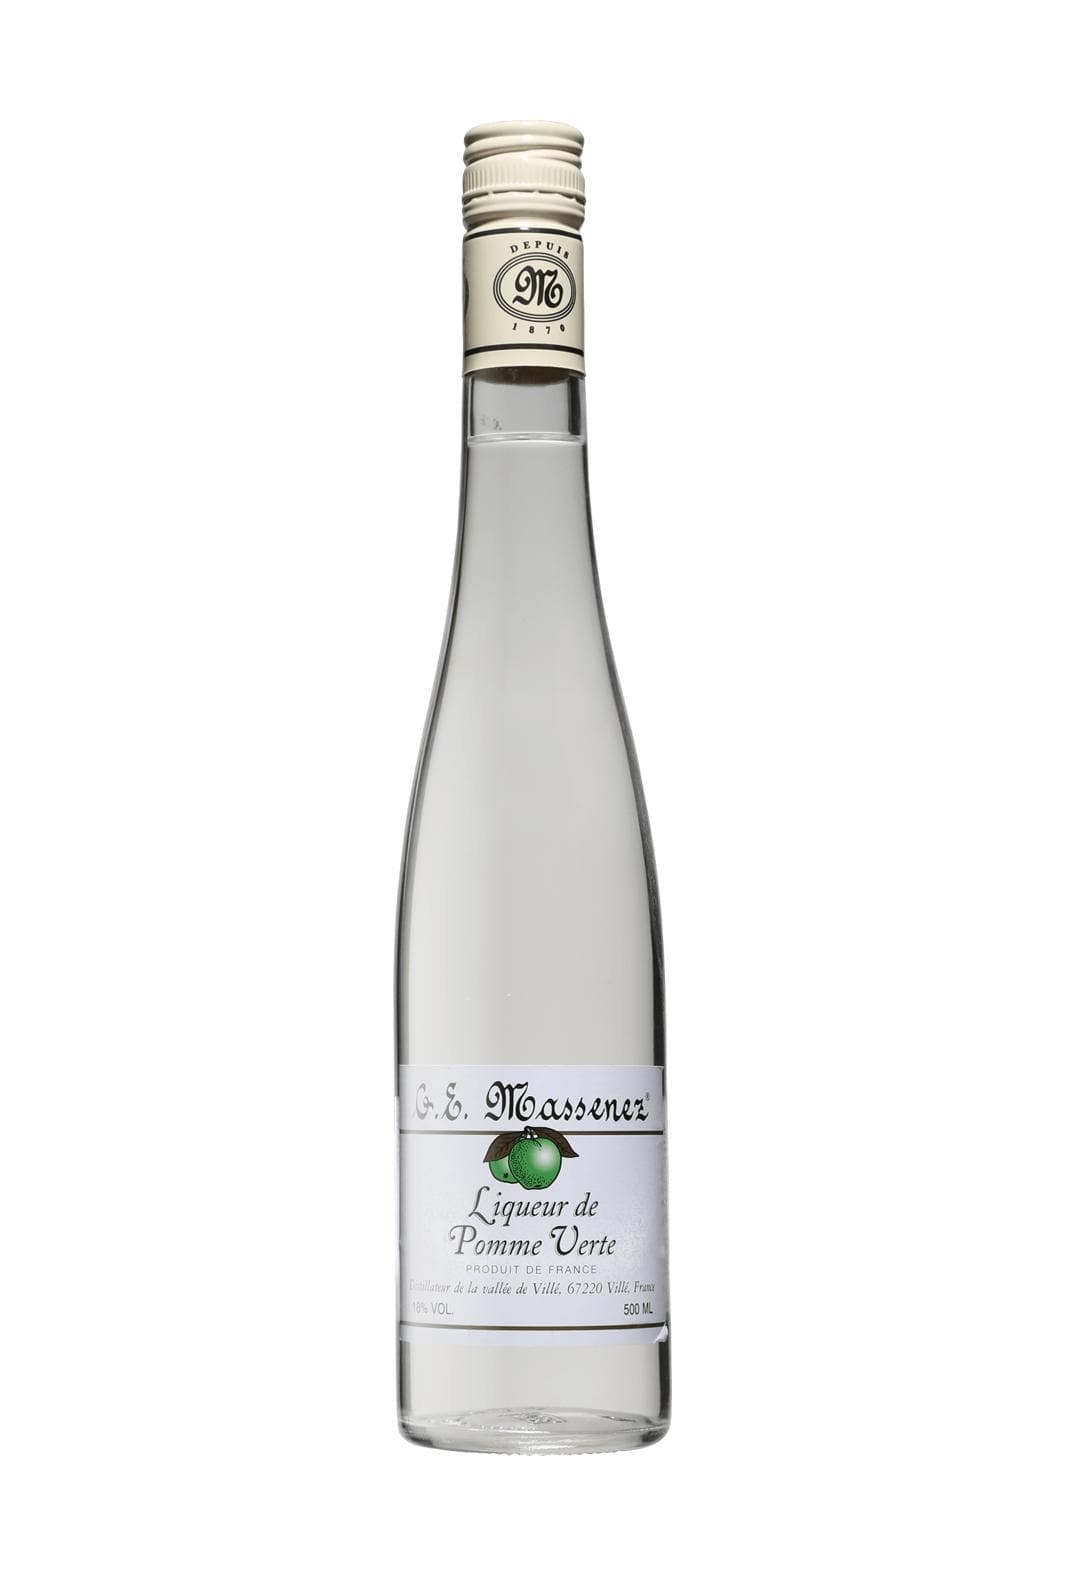 Massenez Liqueur Creme de Pomme Verte (Green Apple)18% 500ml | Liqueurs | Shop online at Spirits of France